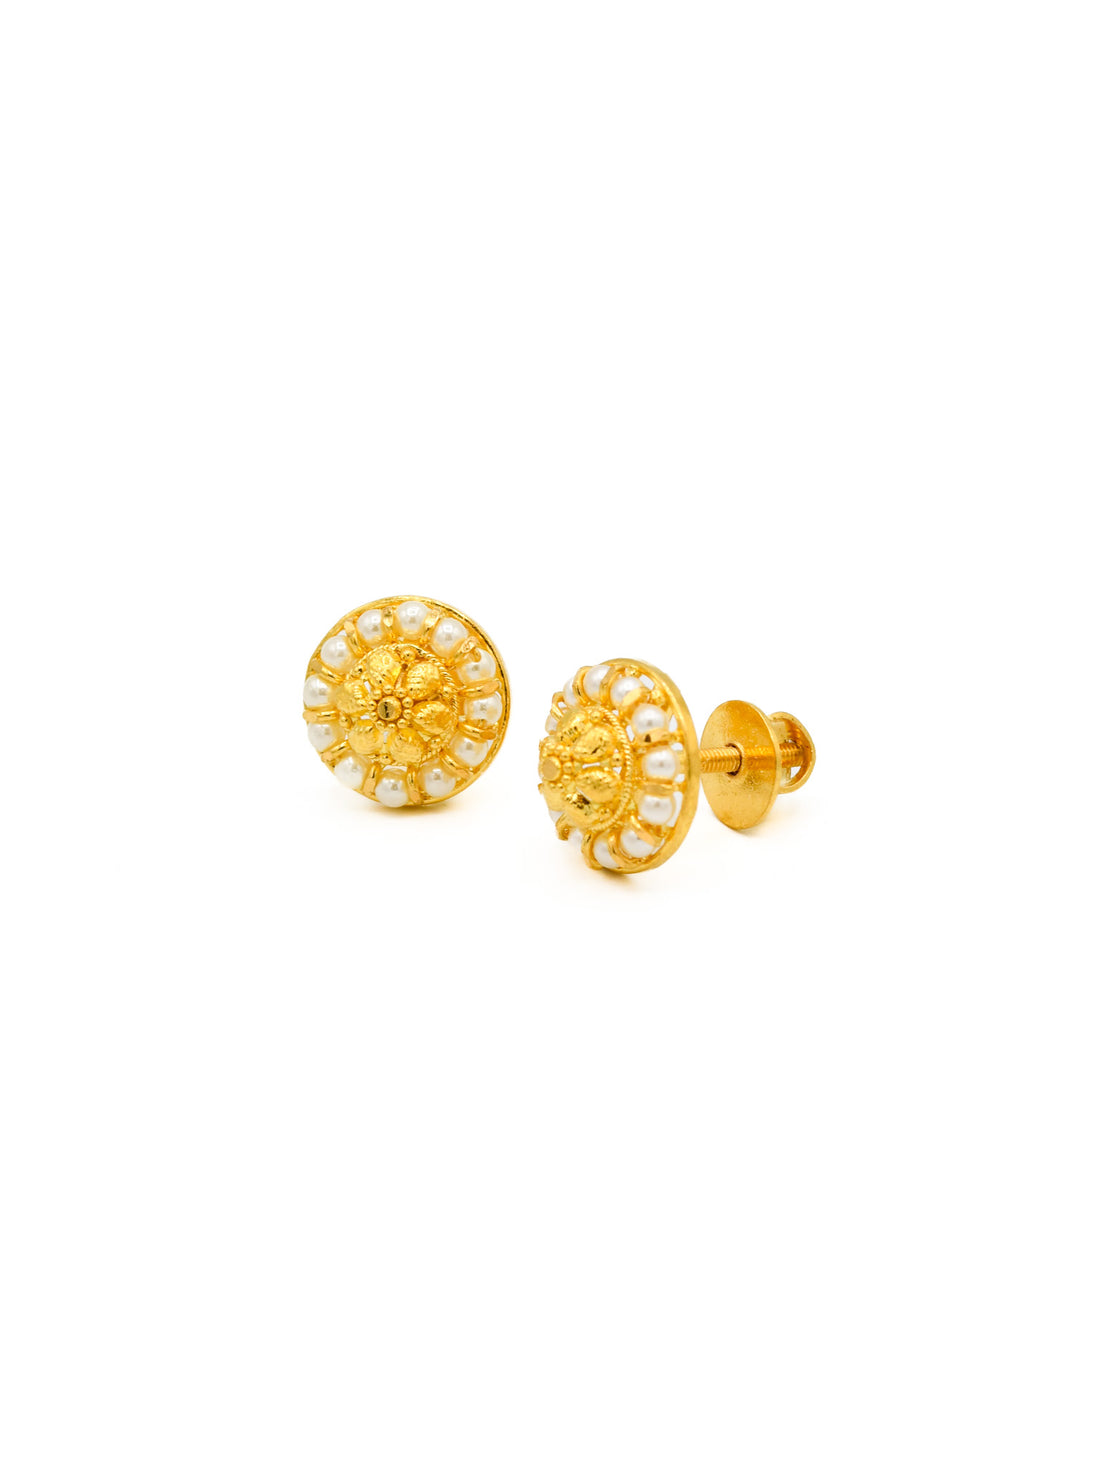 22ct Gold Pearl Stud Earrings - Roop Darshan